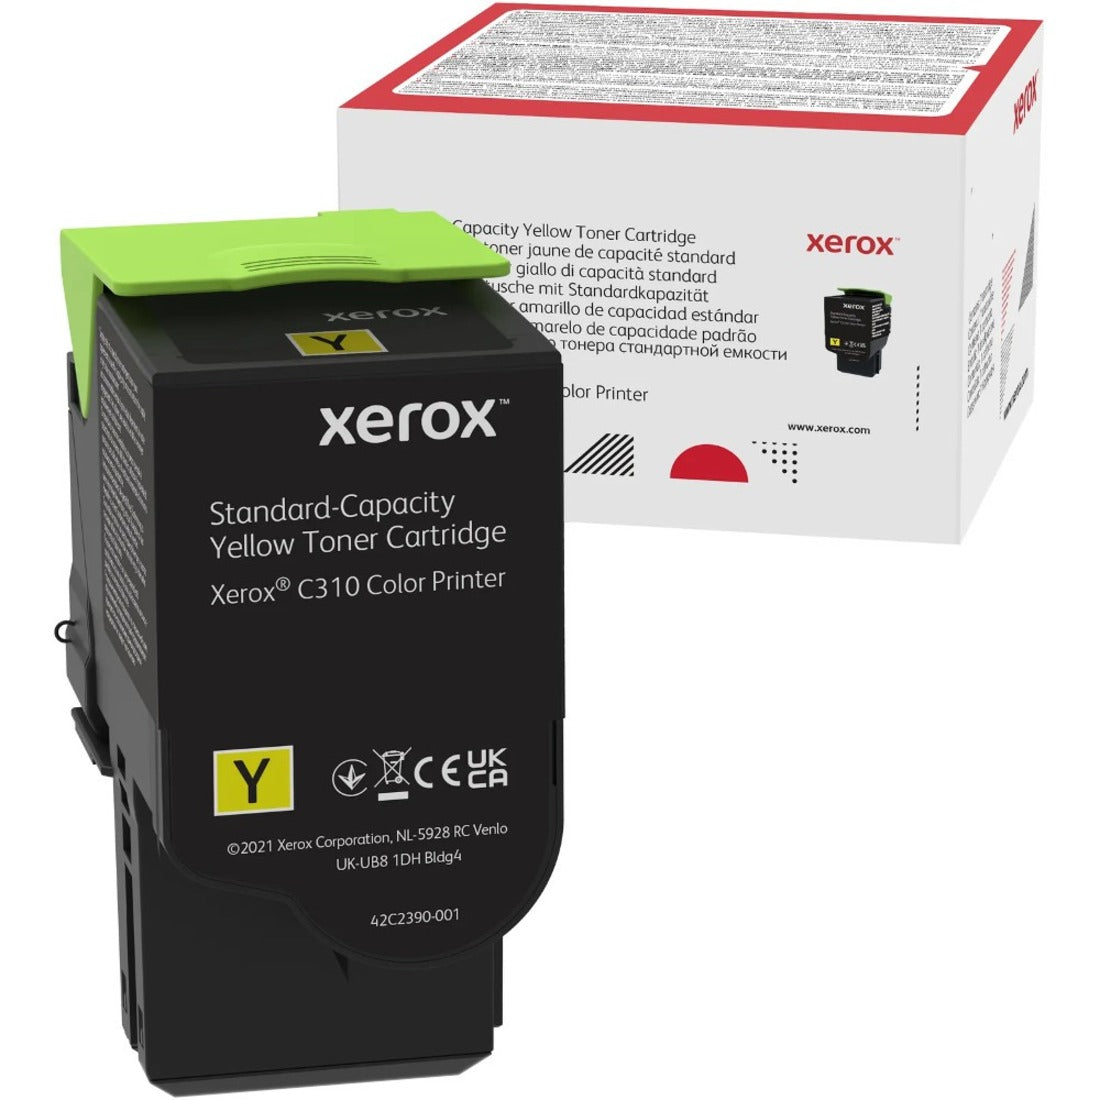 Xerox 006R04359 トナーカートリッジ、イエロー - 標準収量、2000 ページ 流用